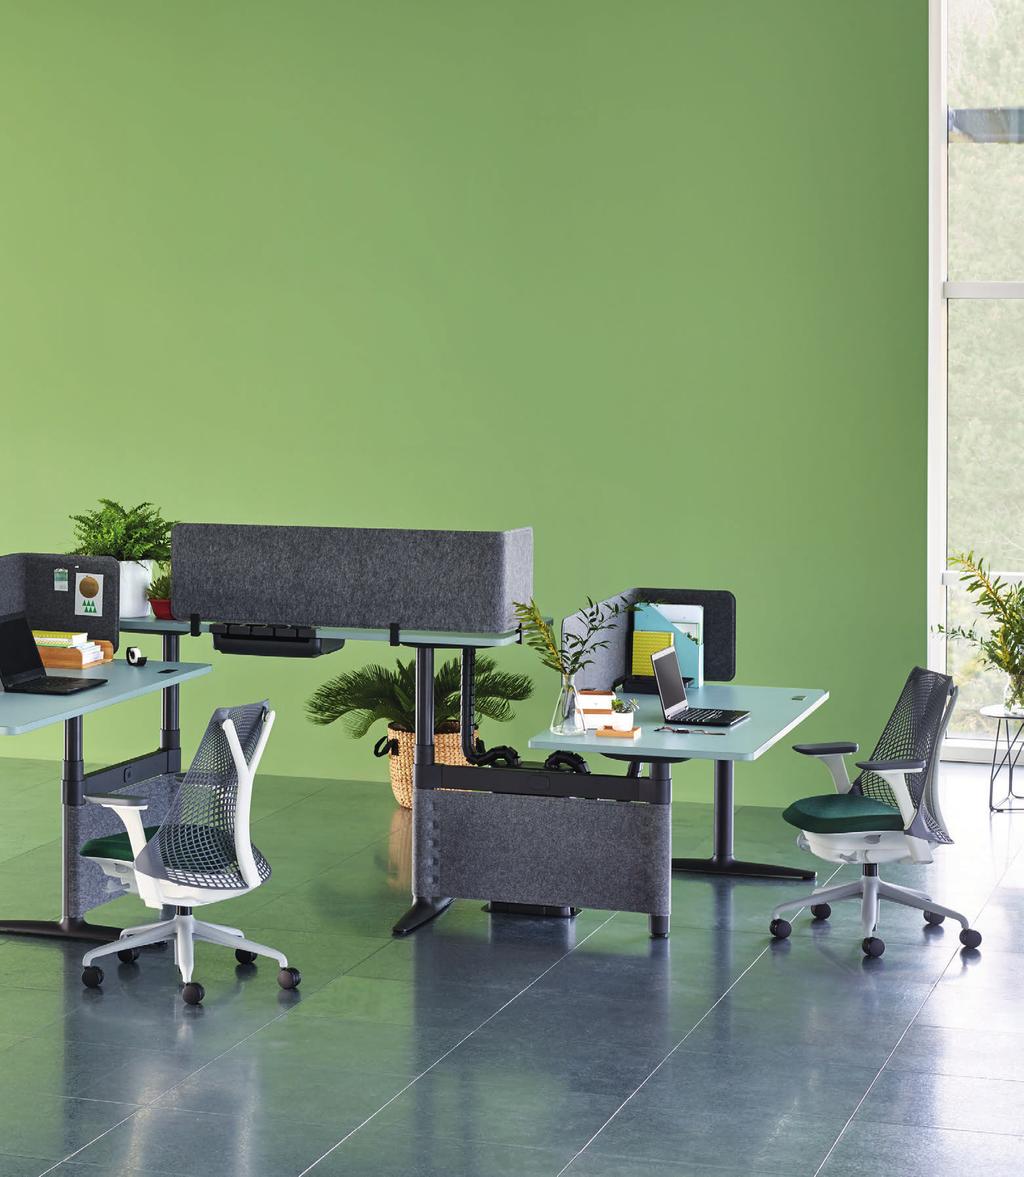 Met zijn vloeiende rondingen heeft Atlas Office Landscape een organische vormgeving die soepel in uw kantoorruimte past.